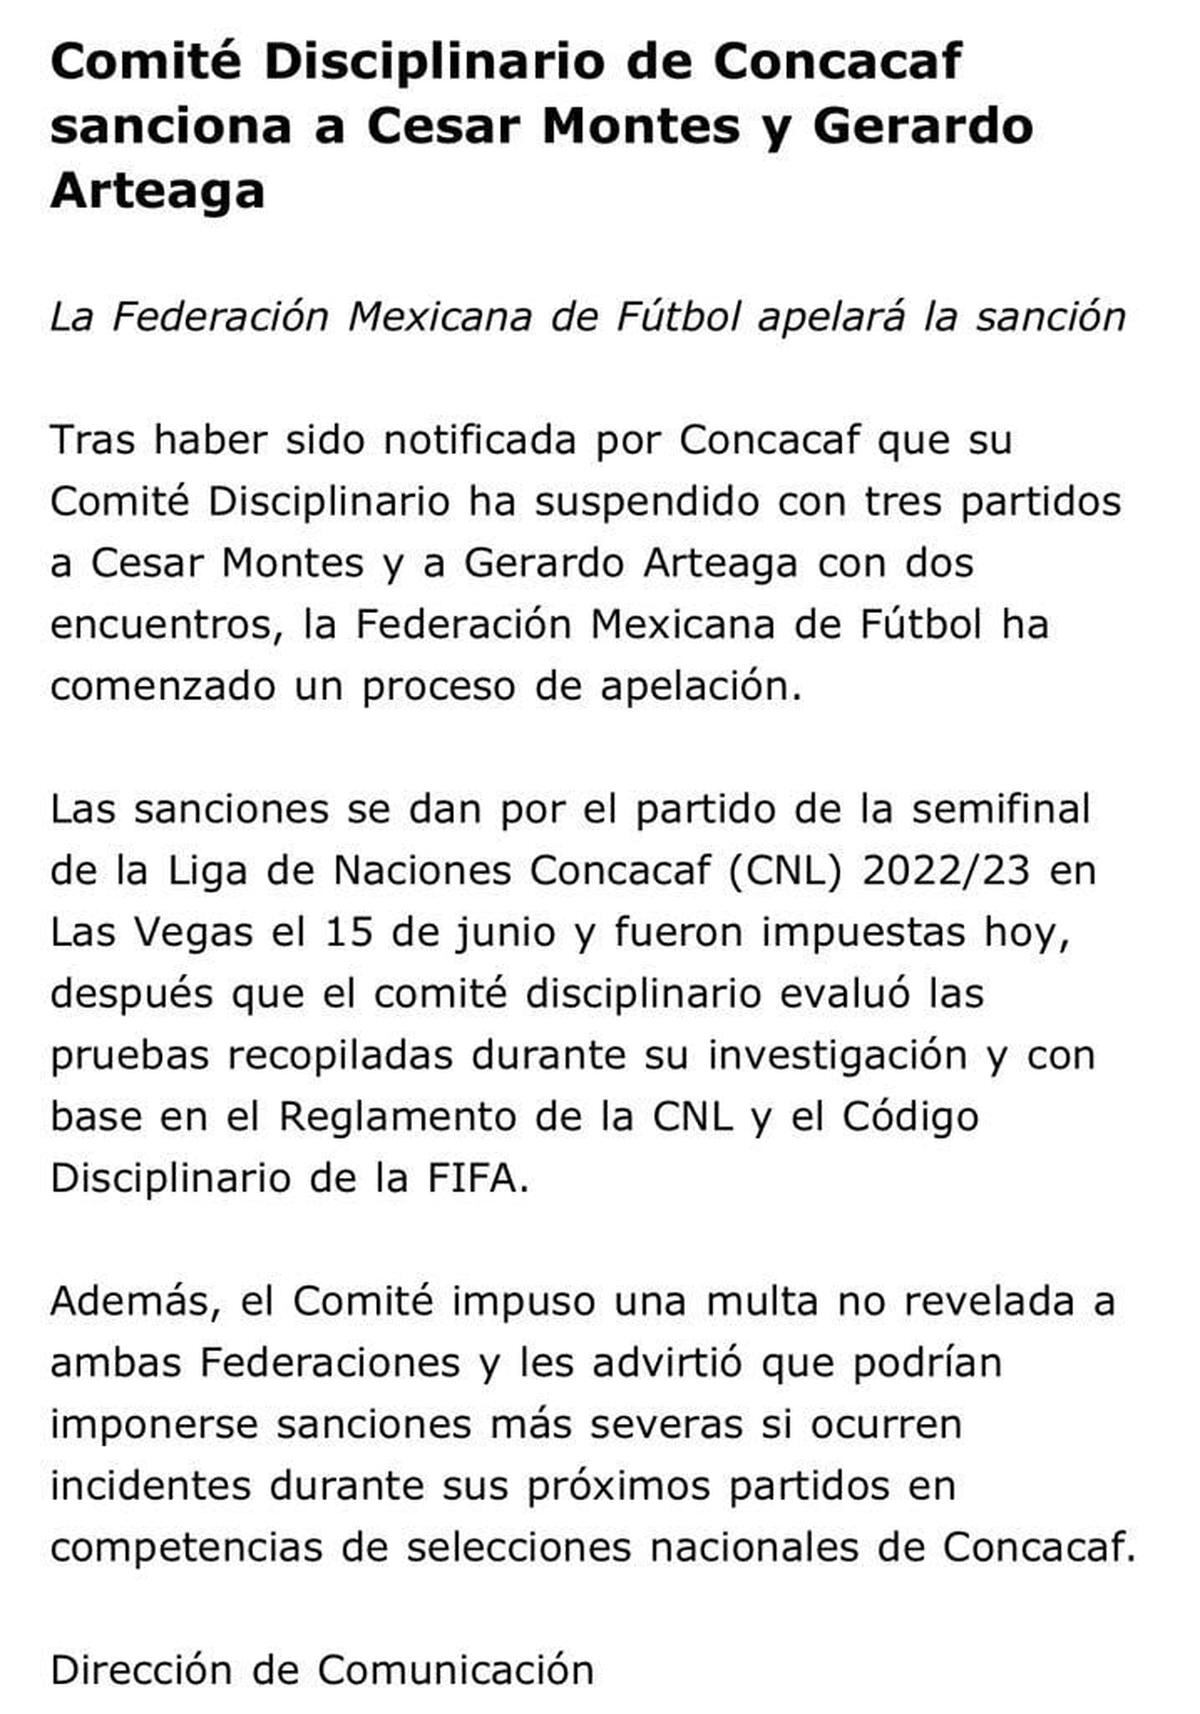 Concacaf | Este es el comunicado de la Concacaf donde avalan la suspensión de César Montes y Gerardo Arteaga. | Foto: Mexsport